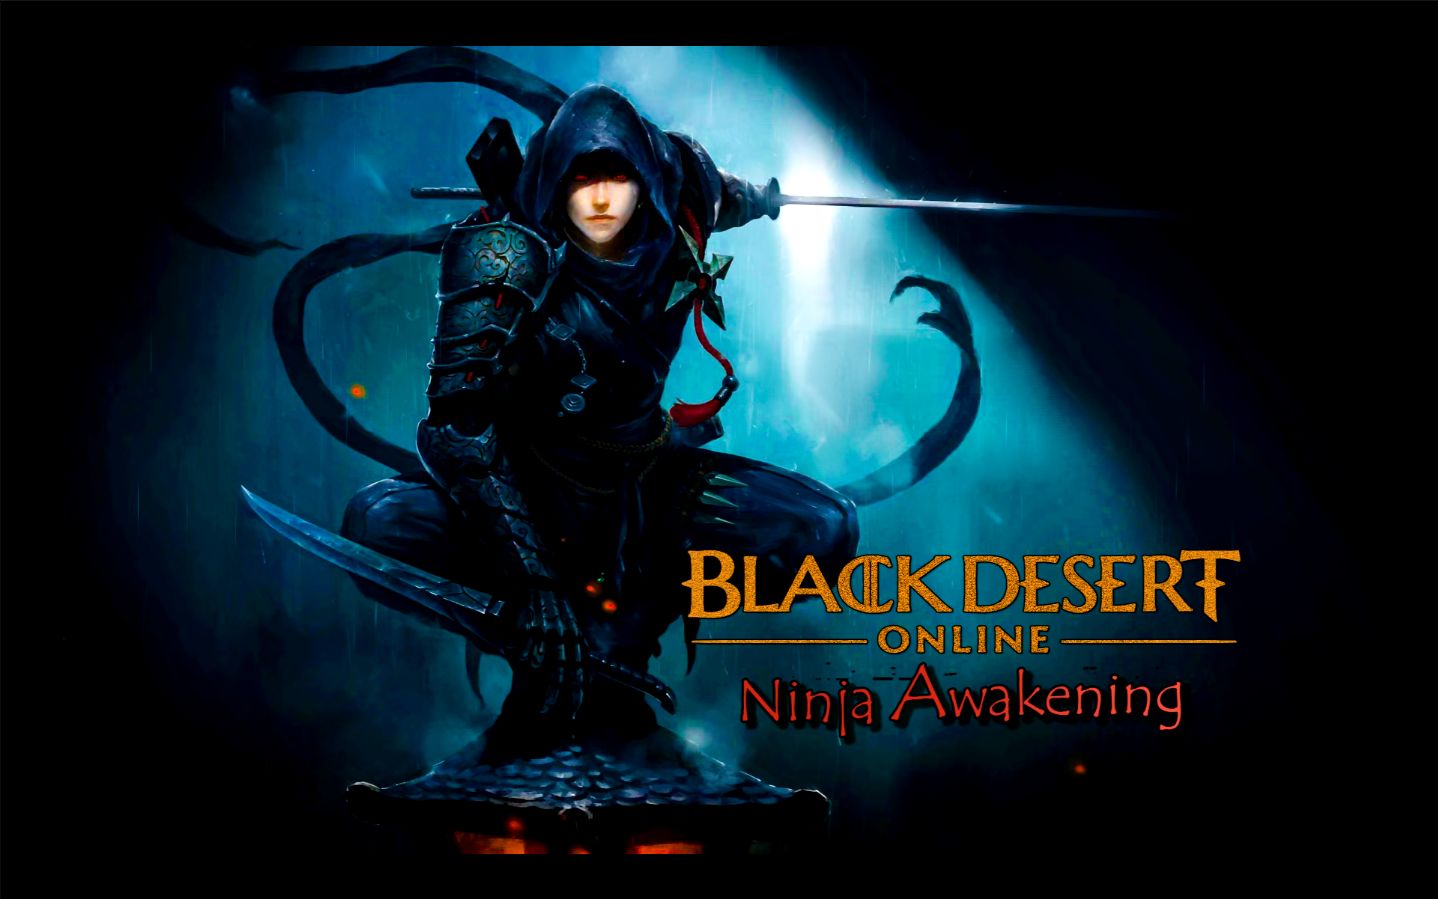 Black desert online [NA] Ninja awakening PK 死亡合辑